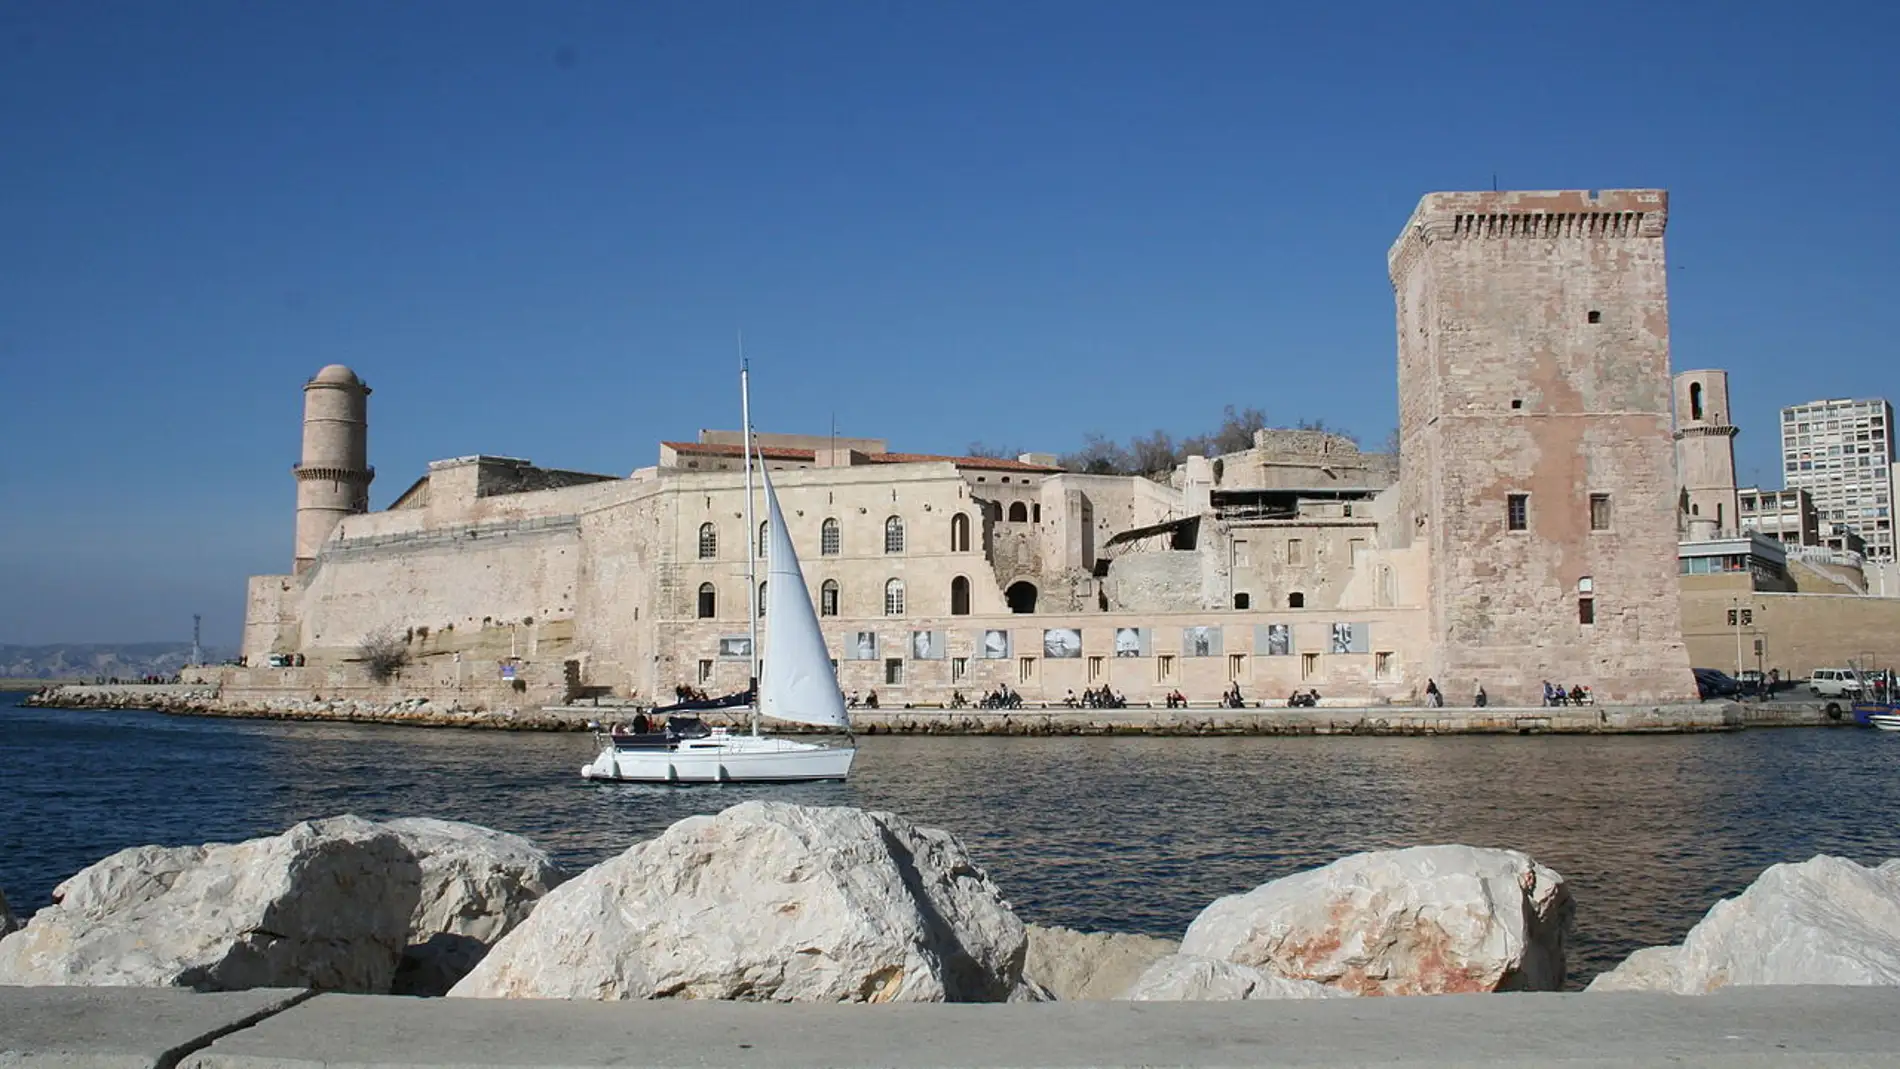 Fuerte Saint-Jean de Marsella: ¿Sabías que llegó a ser utilizado como prisión estatal?